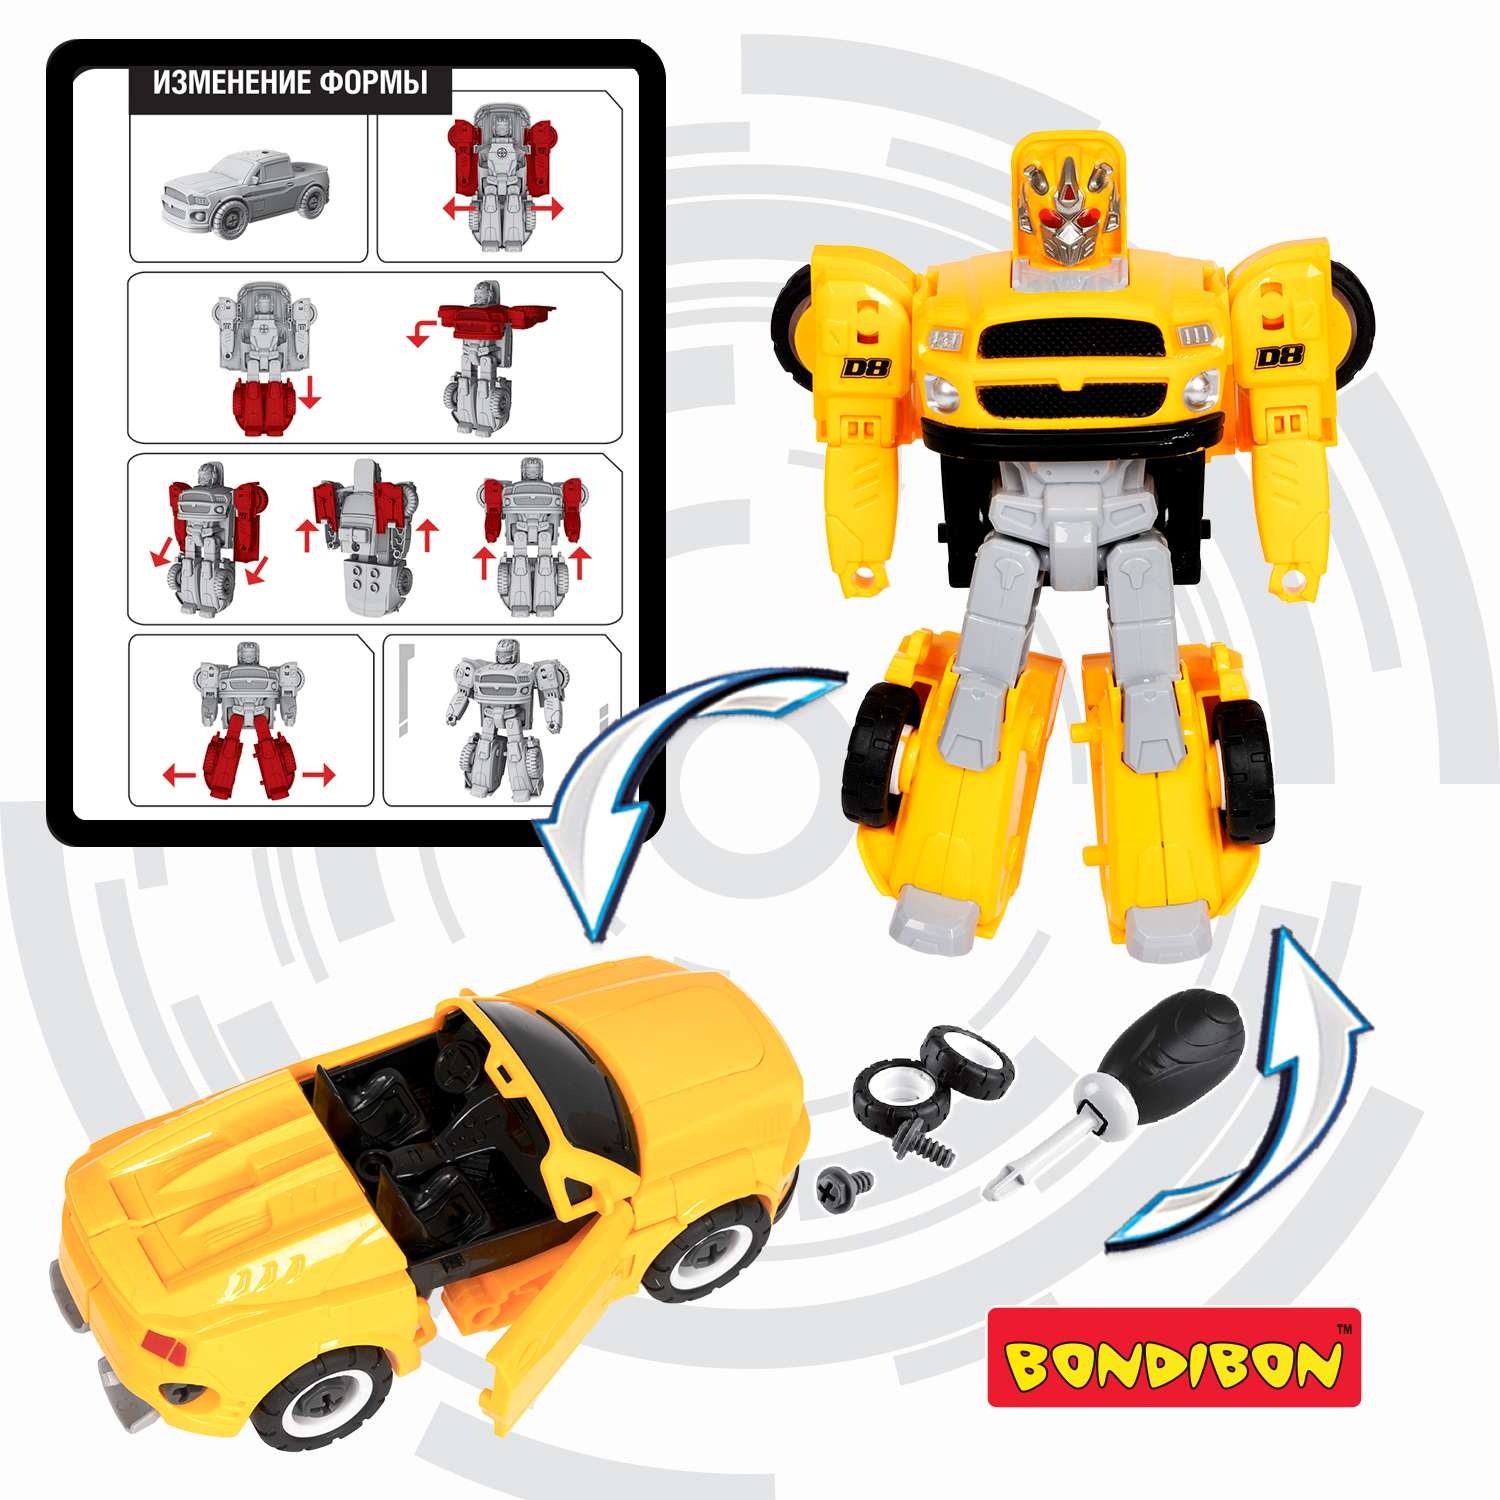 Трансформер BONDIBON Bondibot Робот-автомобиль кабриолет с отвёрткой 2 в 1 жёлтого цвета - фото 6